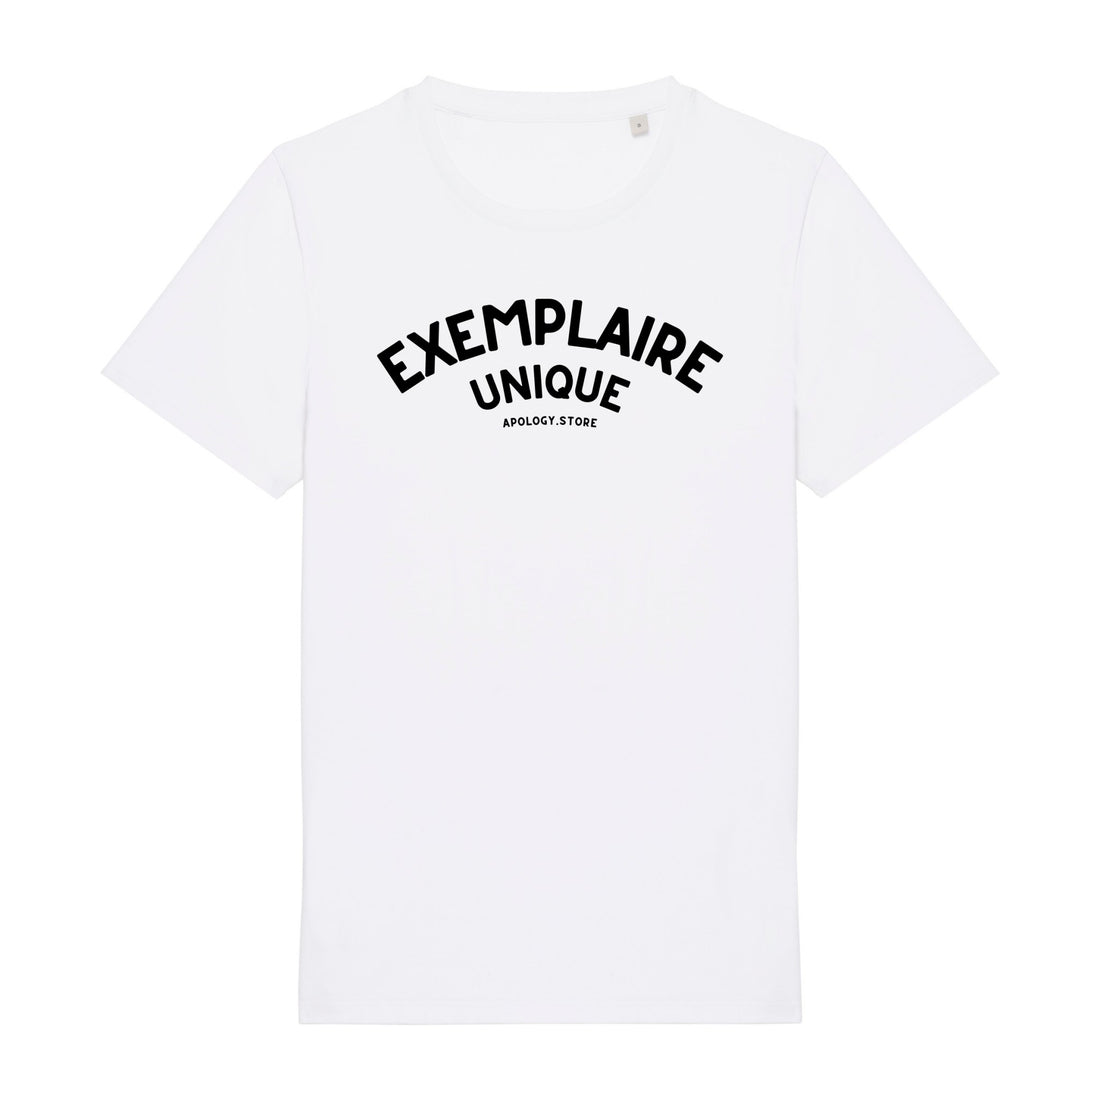 T-shirt Exemplaire Unique - Fabriqué au Portugal XS Blanc - Imprimé en France